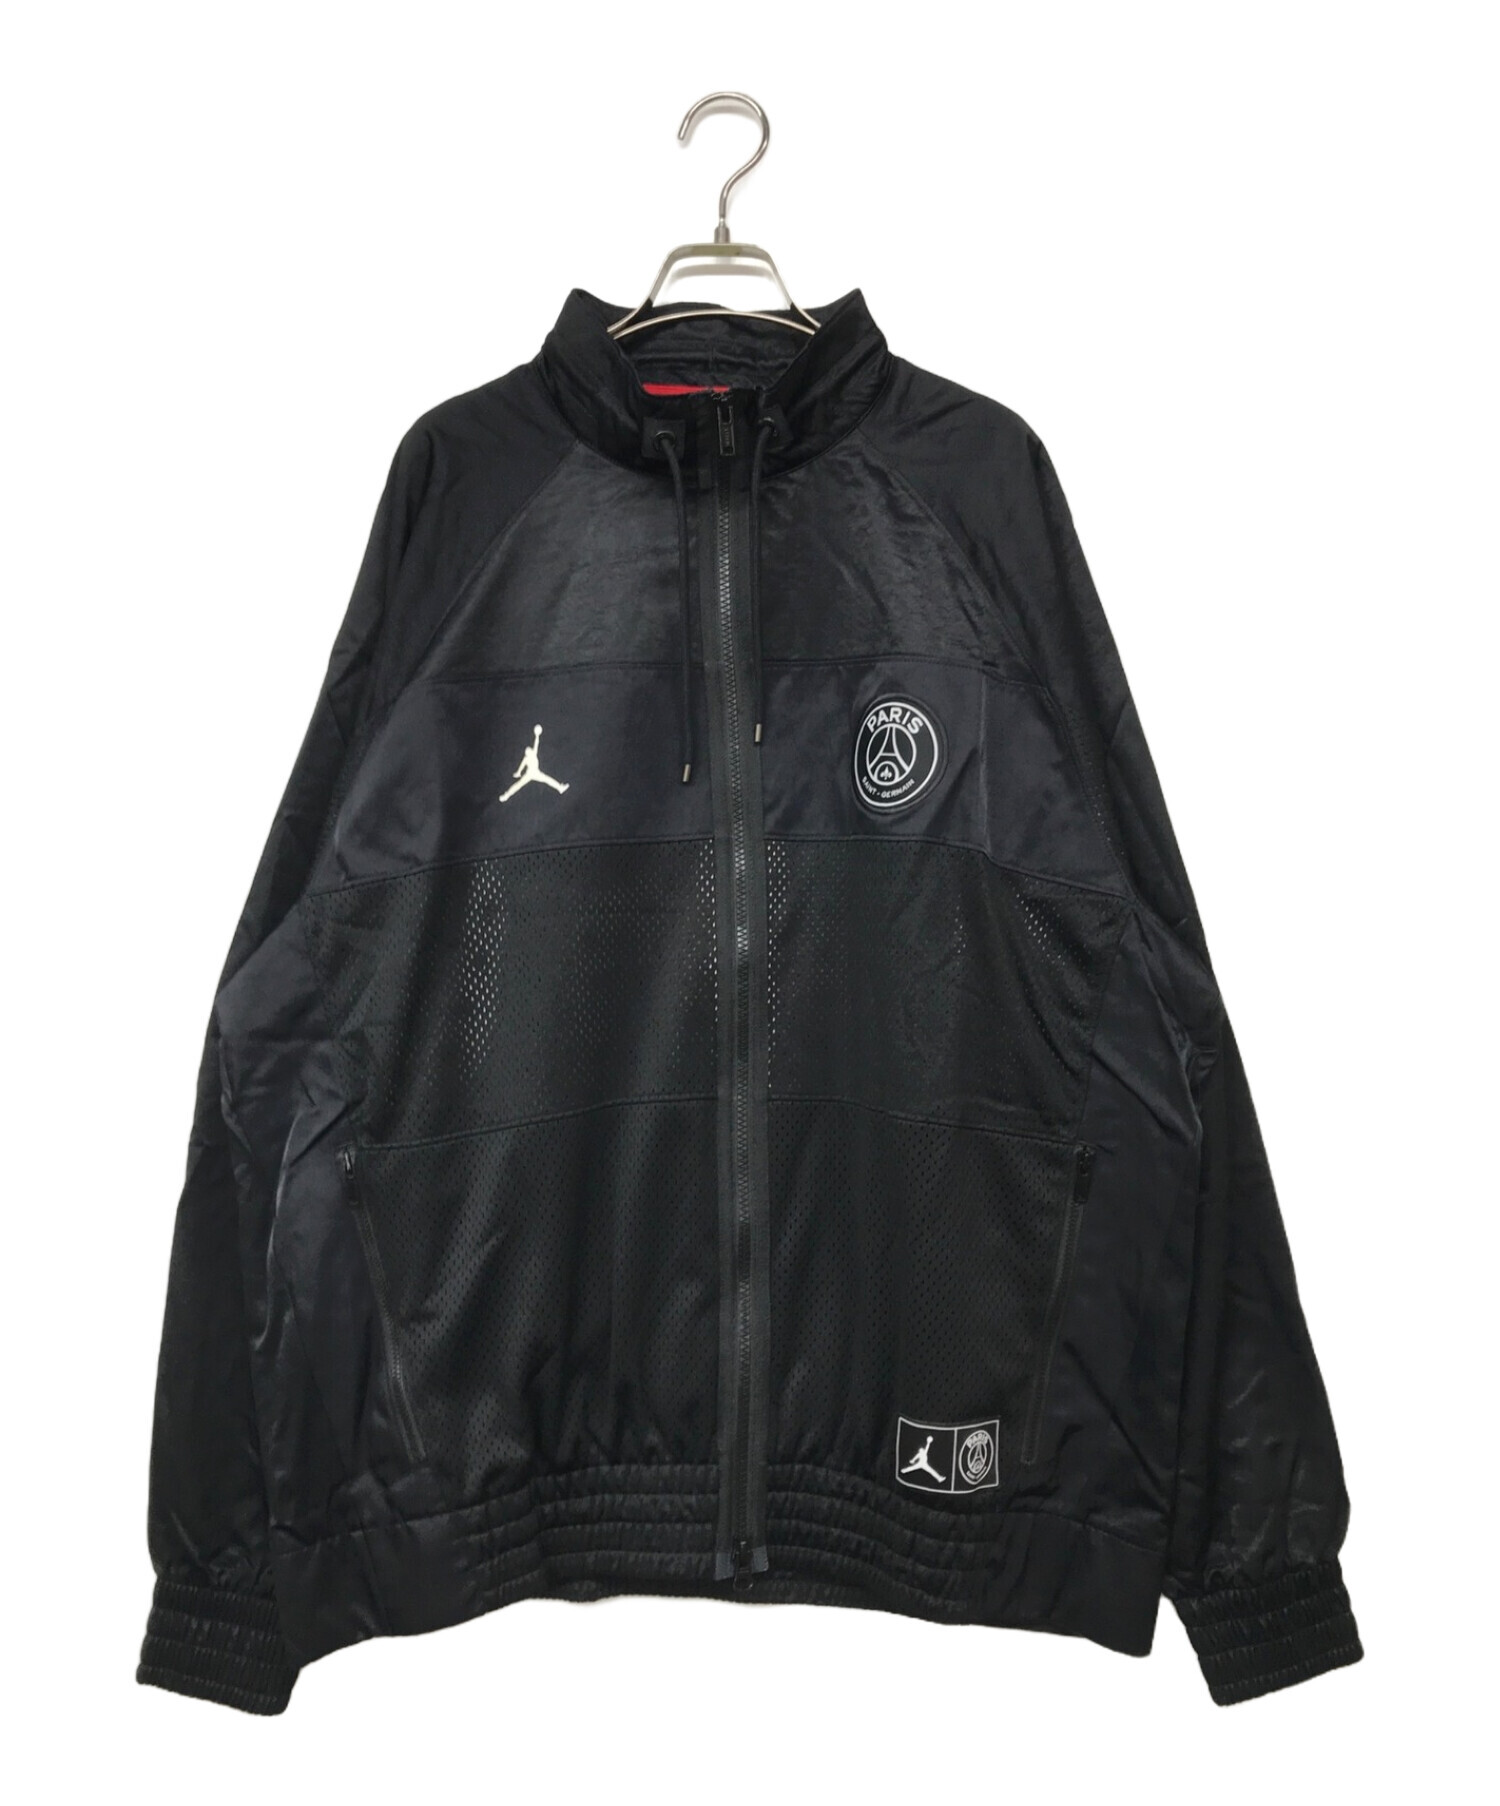 JORDAN (ジョーダン) PSG (パリ・サンジェルマンFC) スーツジャケット ブラック サイズ:M